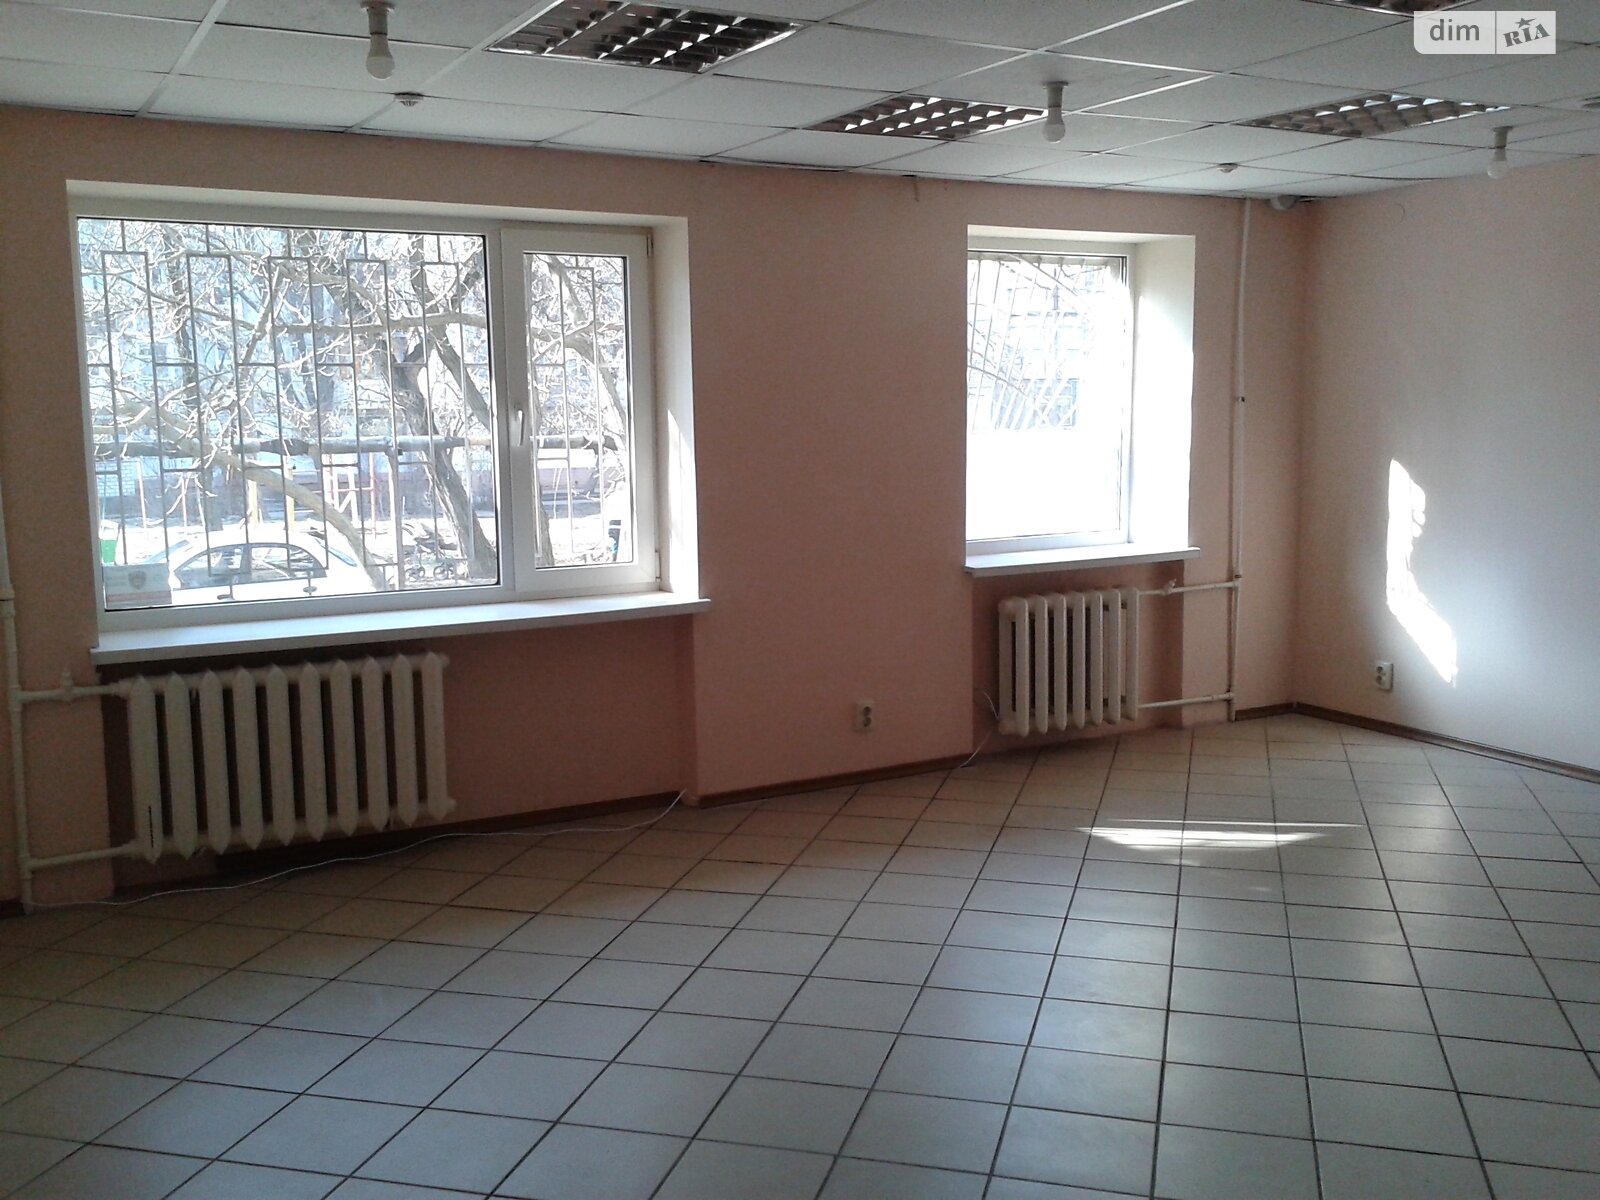 Аренда офисного помещения в Николаеве, Богоявленский проспект 39, помещений -, этаж - 1 фото 1